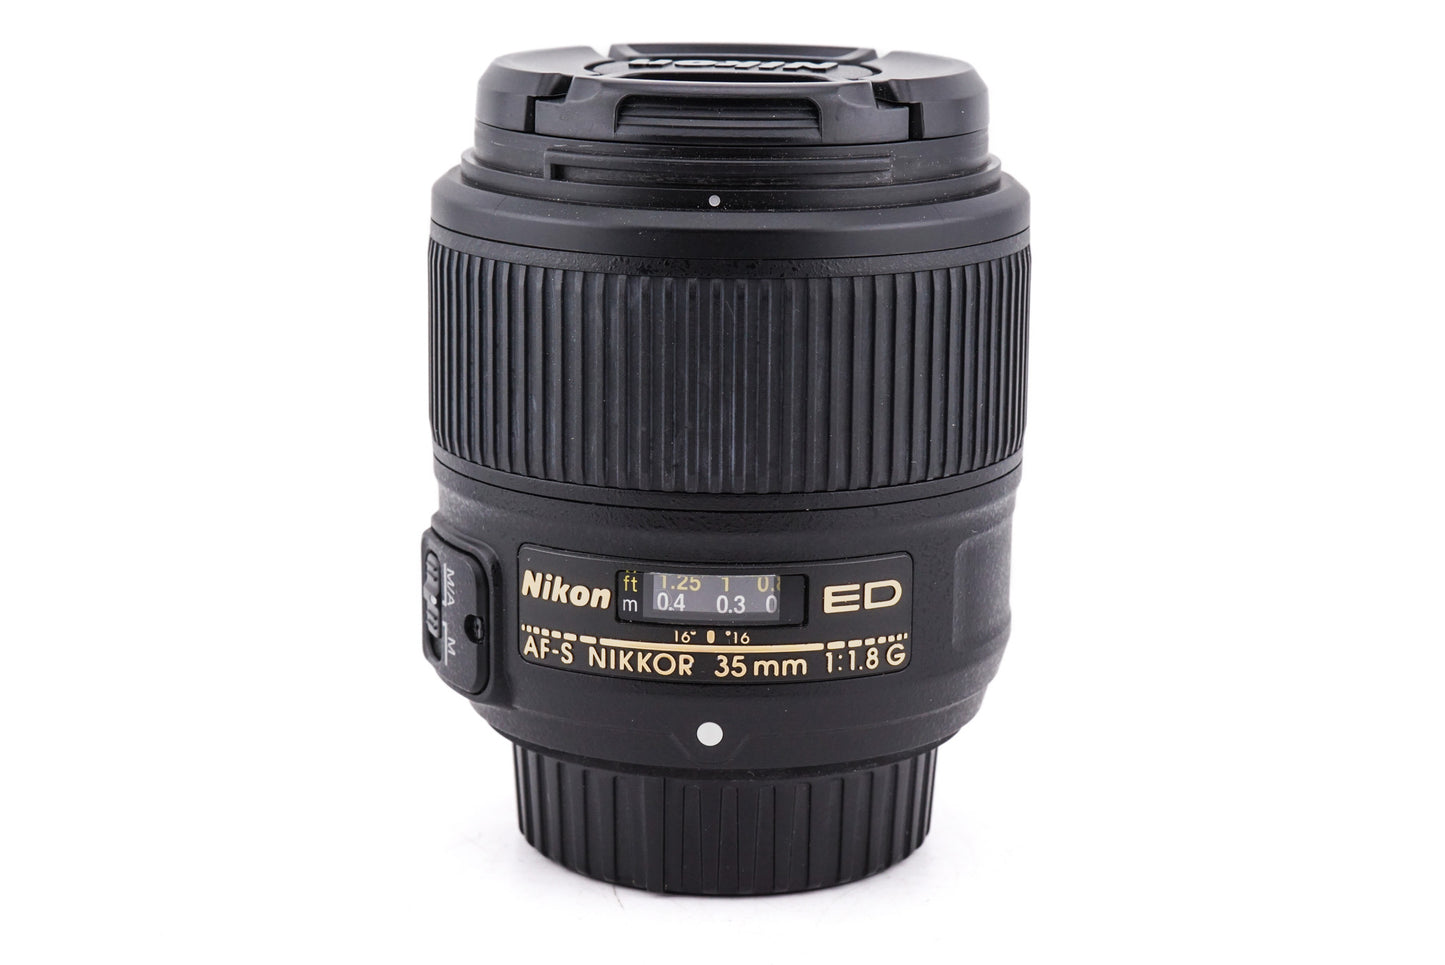 Nikon 35mm f1.8 G ED AF-S Nikkor - Lens